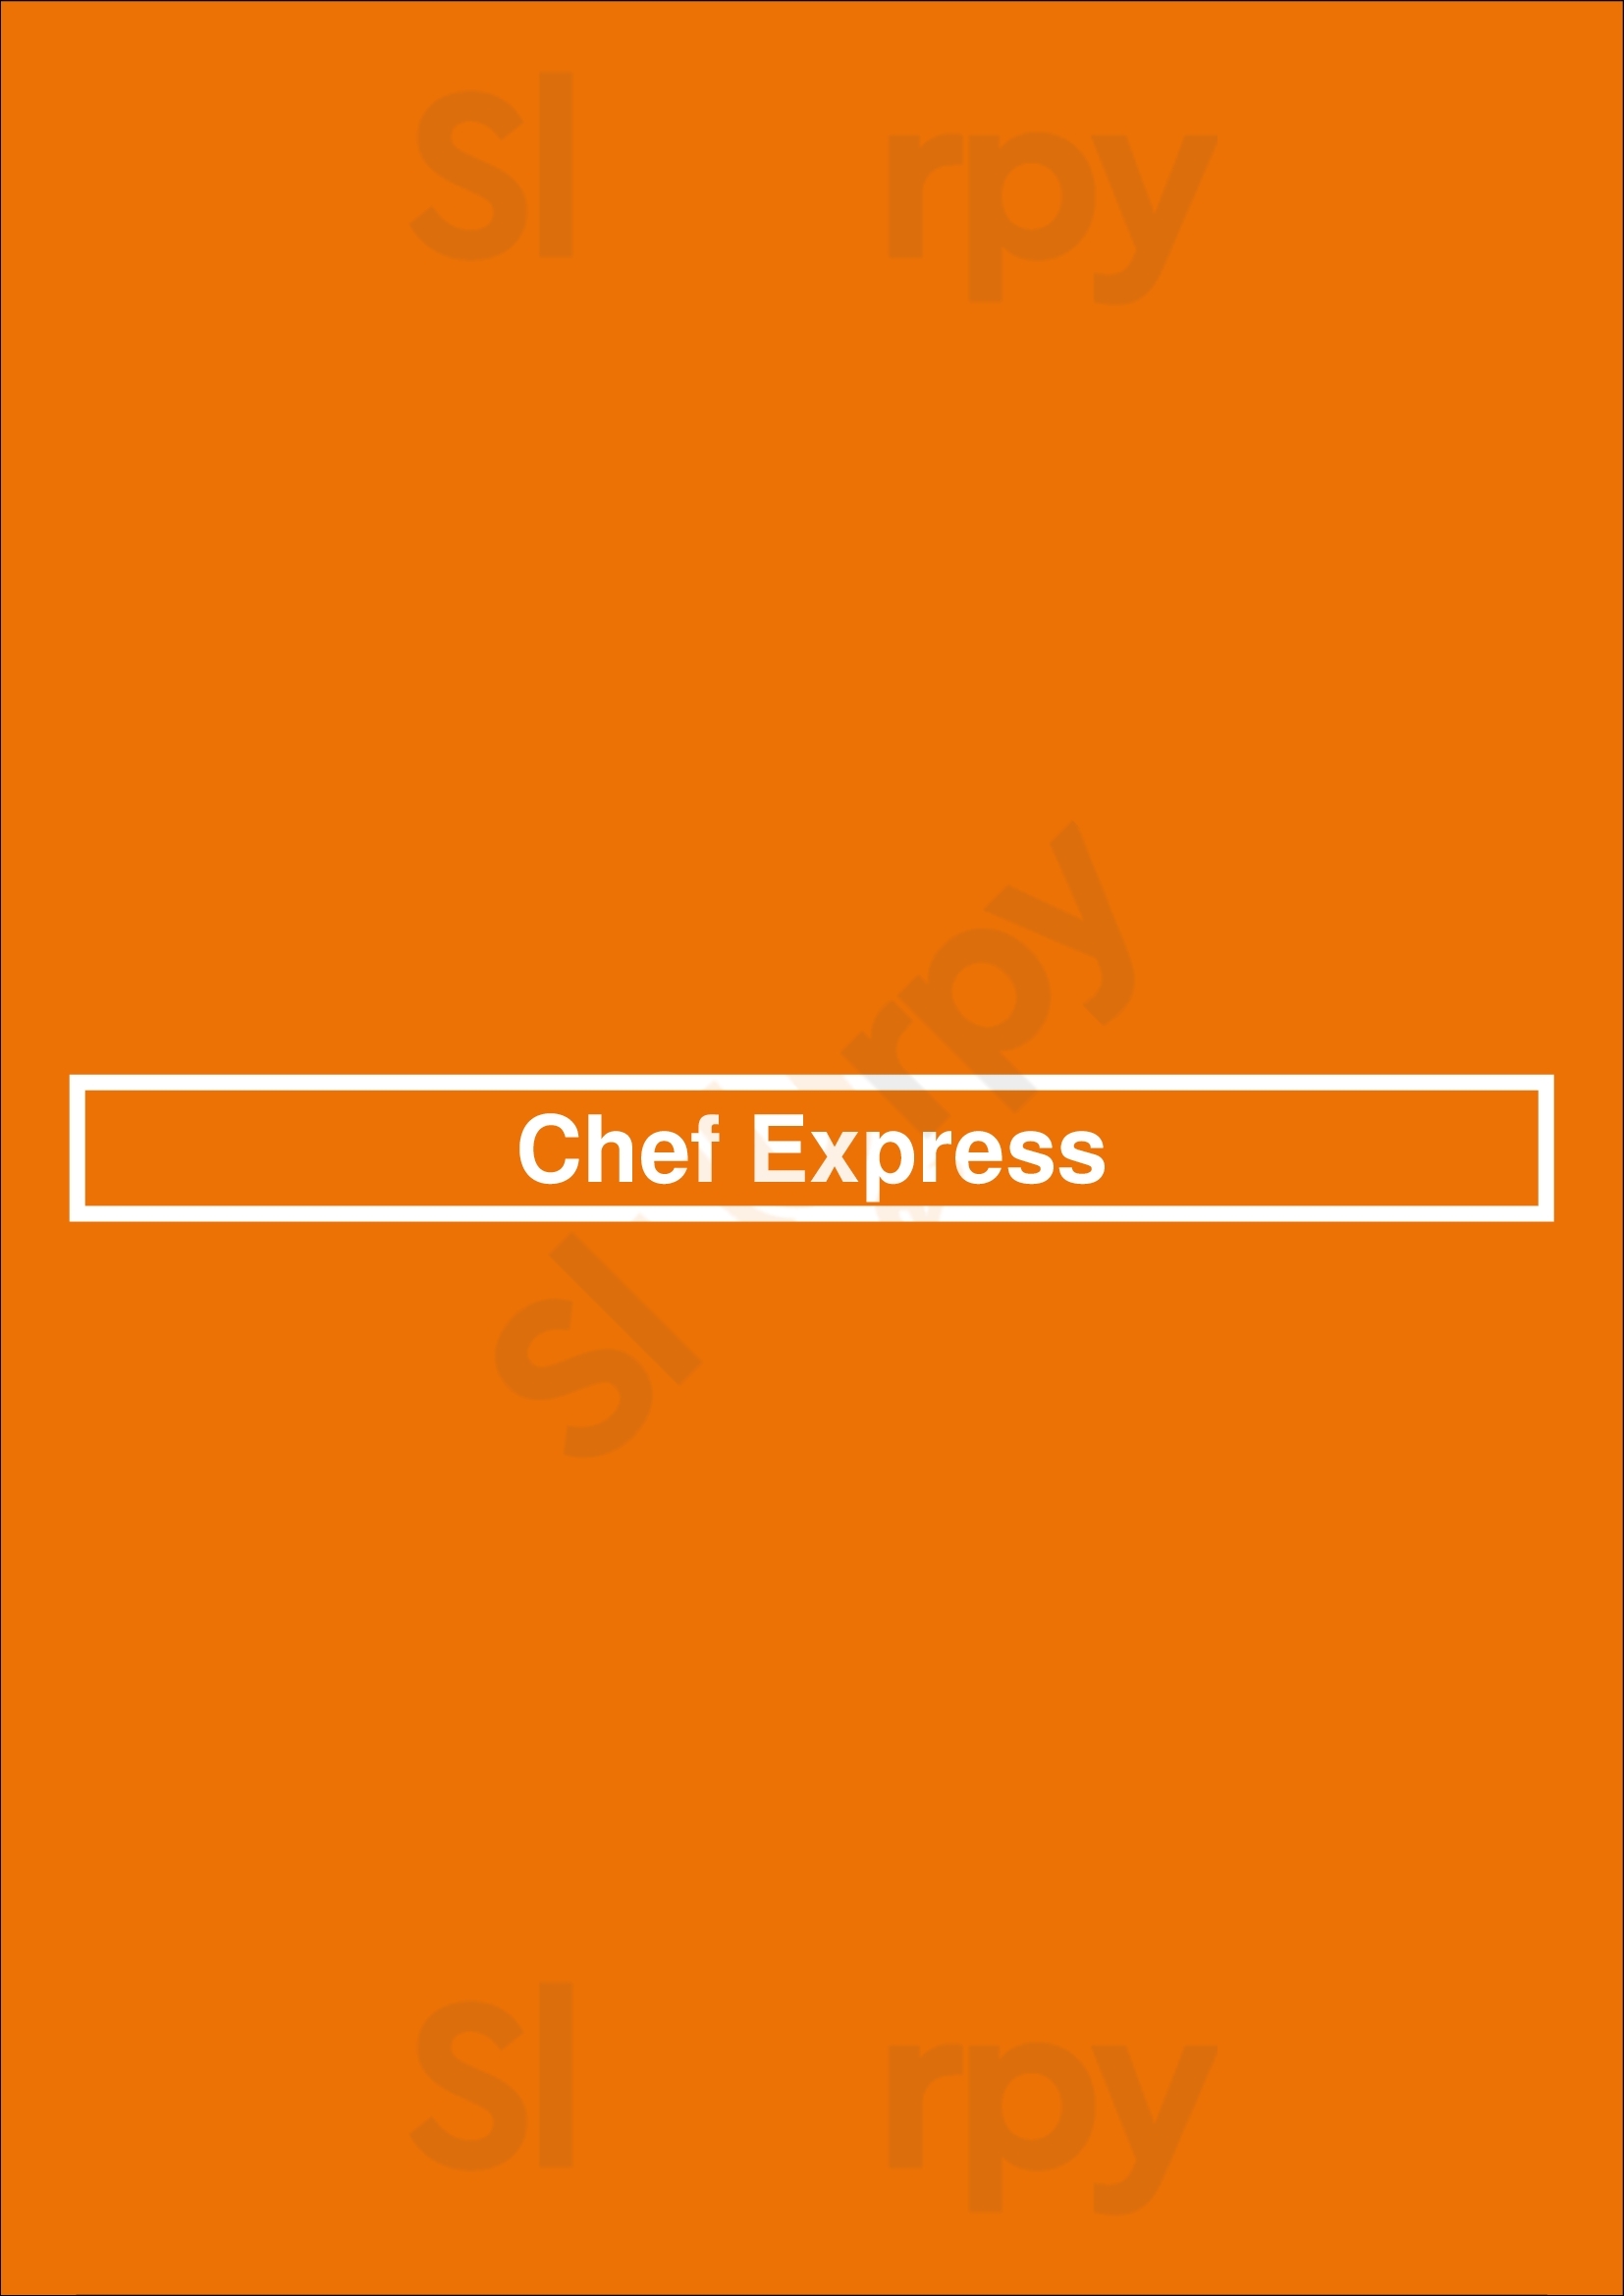 Chef Express Saskatoon Menu - 1